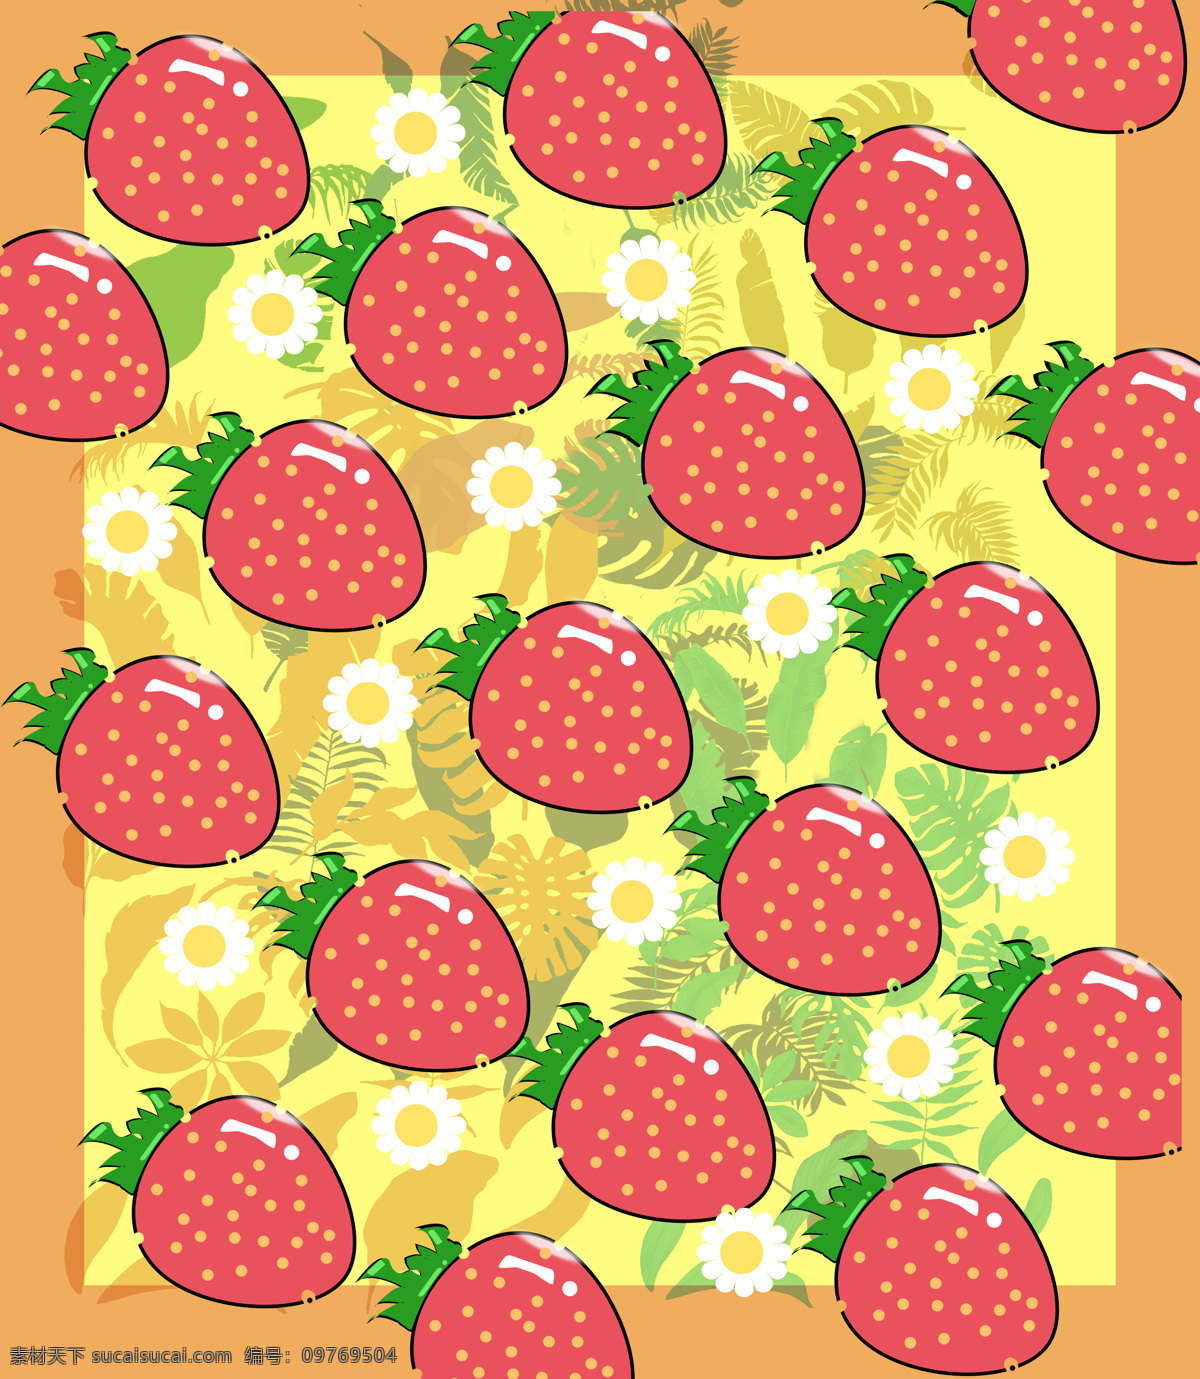 夏日 清凉 小 草莓 粉嫩 印花 可爱风 底纹边框 背景底纹